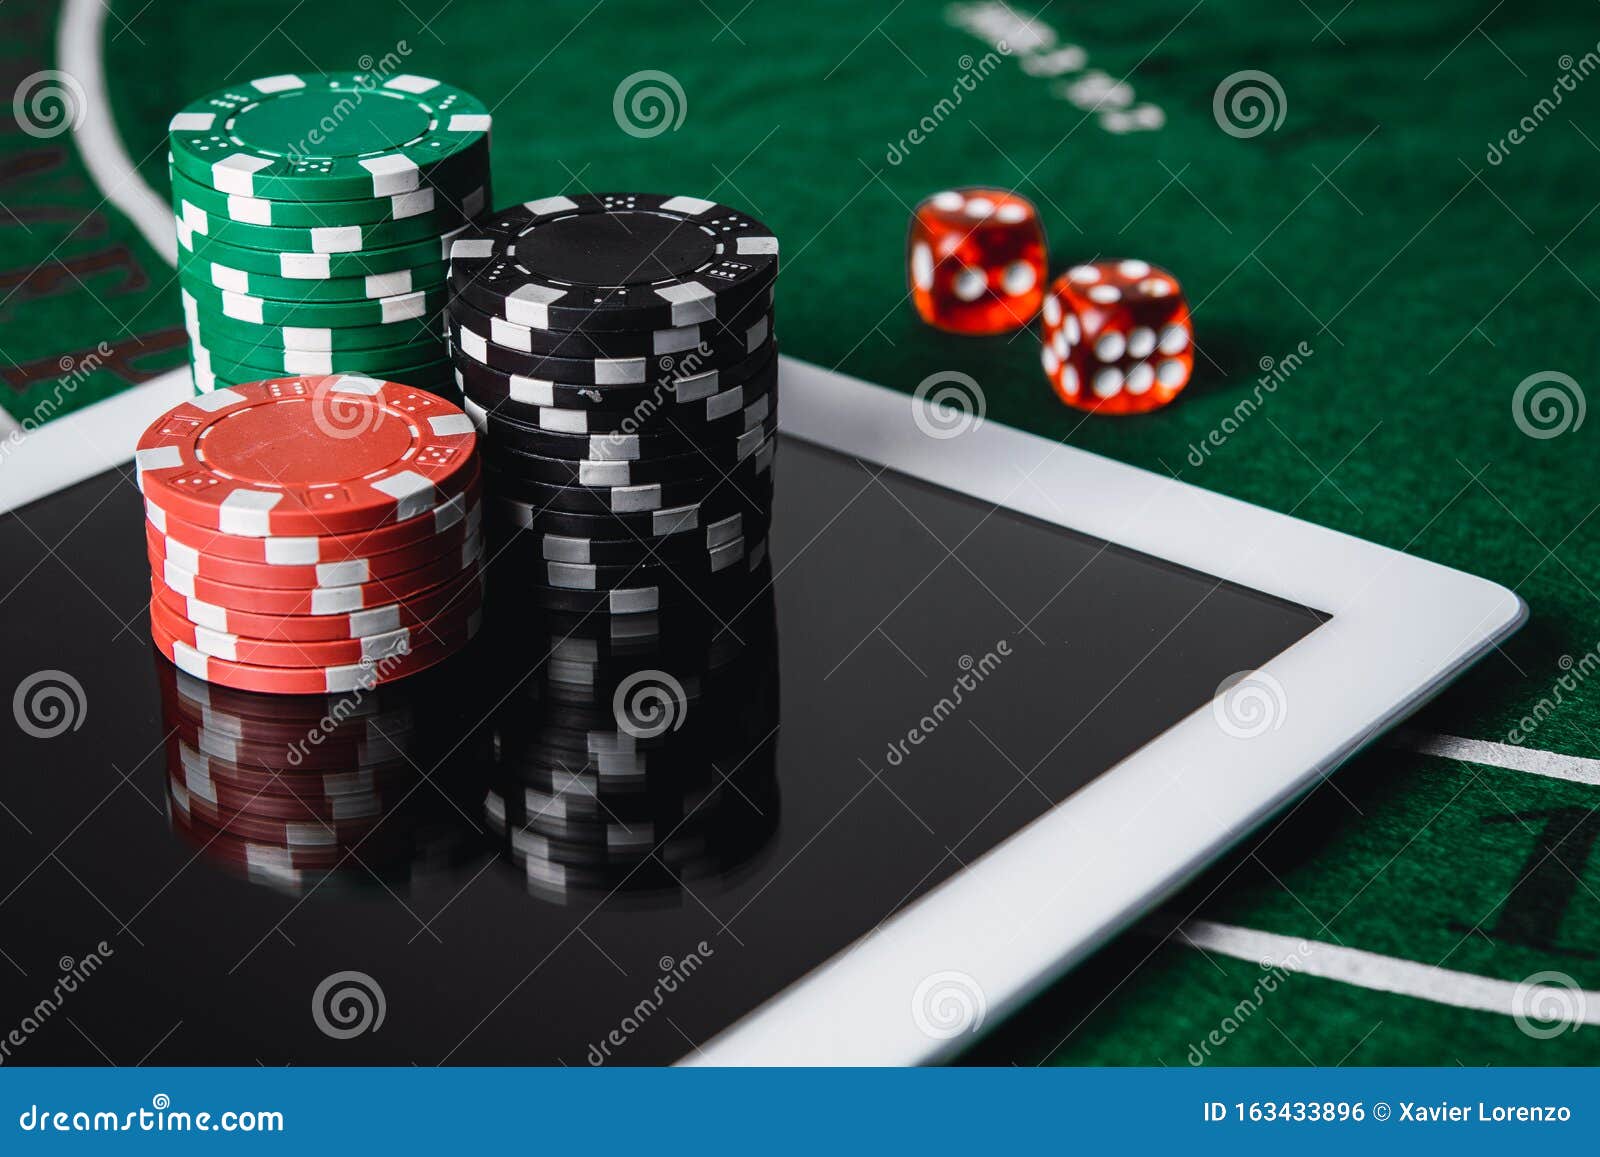 Poker con dinero real Experimento: ¿bueno o malo?